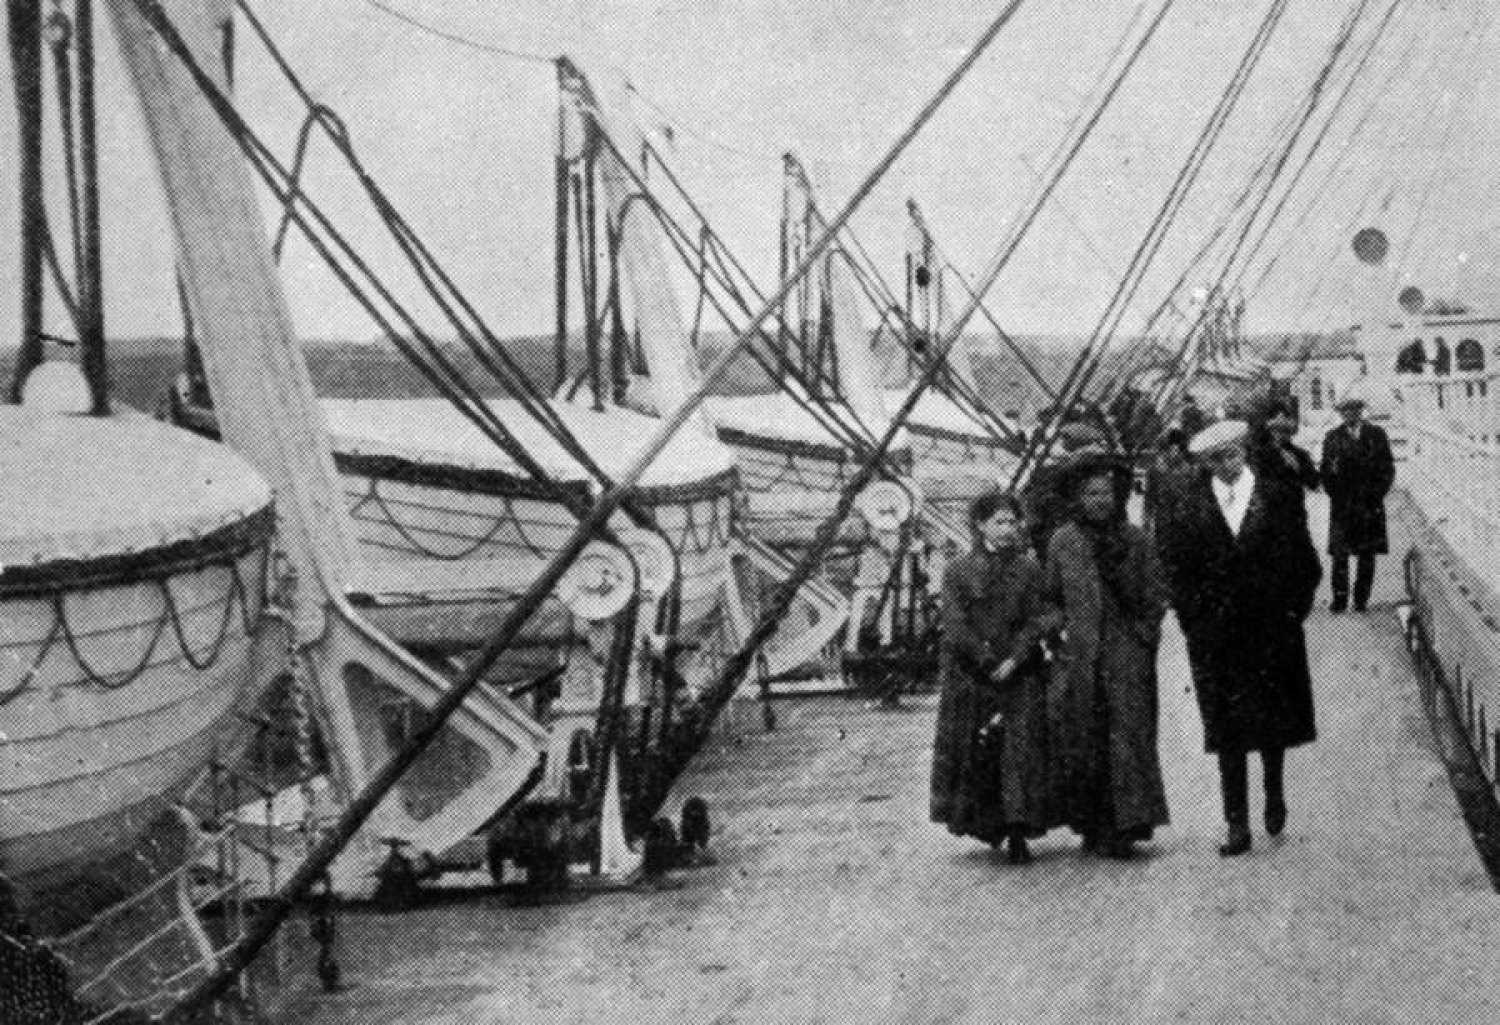 Titanic - Over a boarding bridge